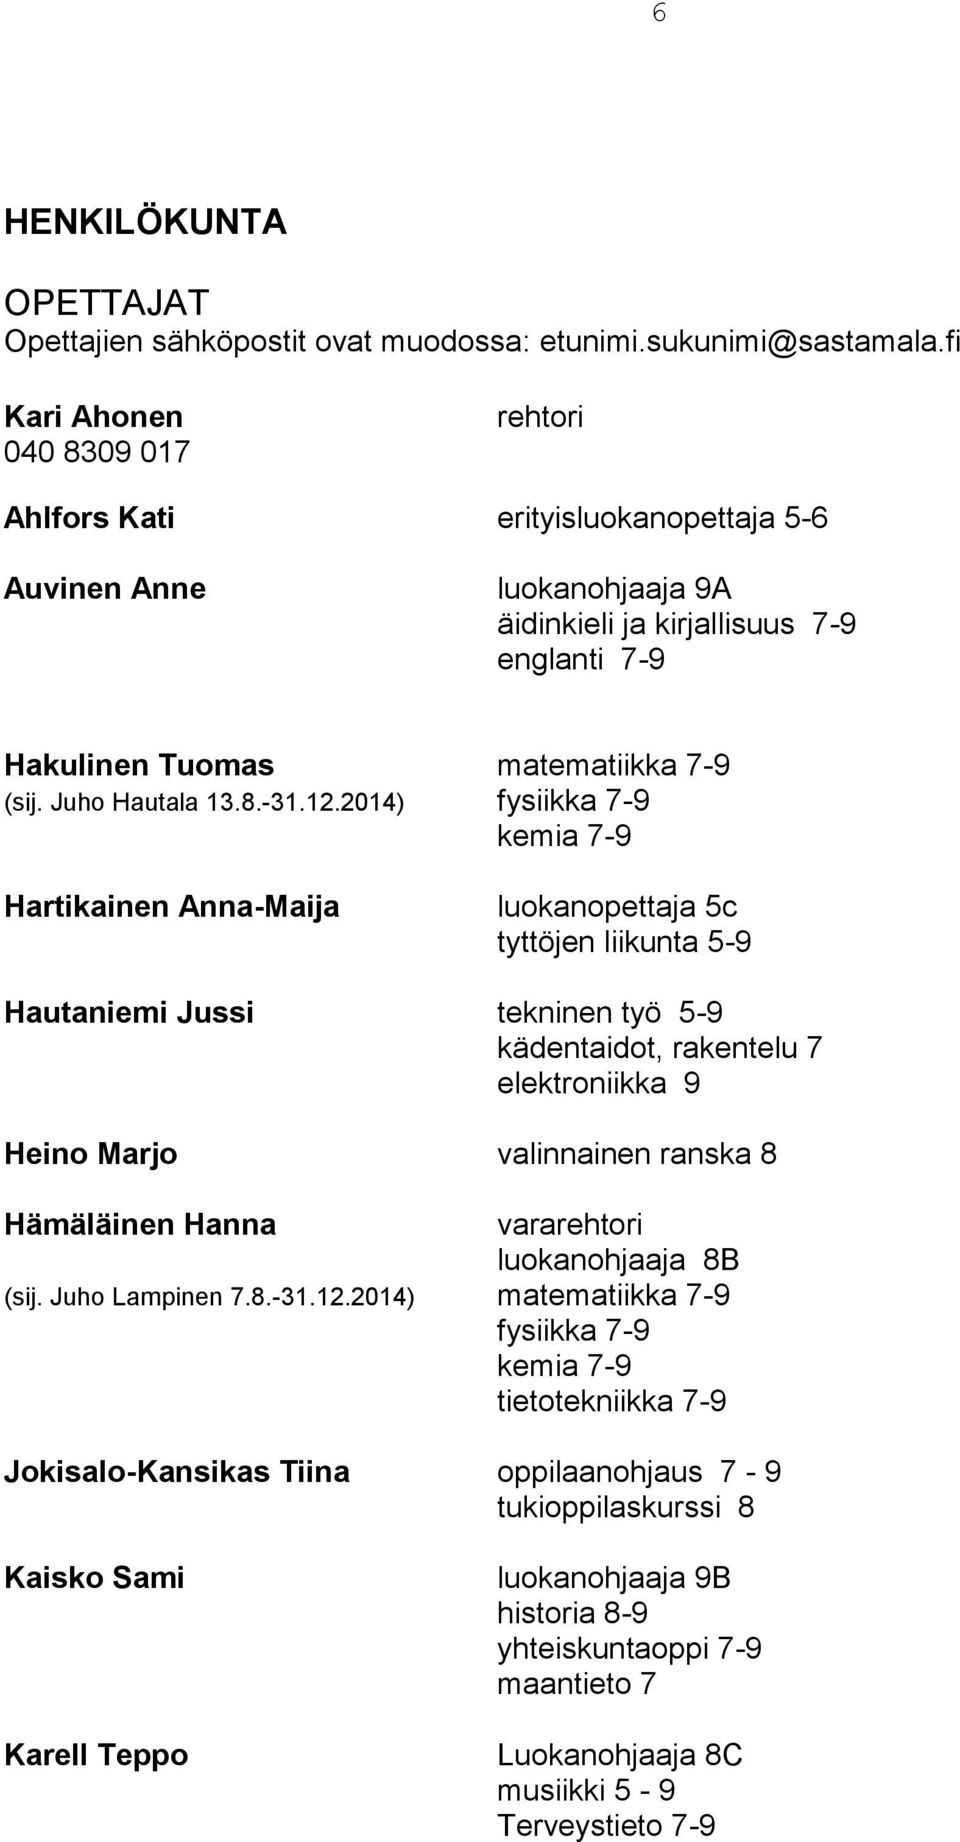 Juho Hautala 13.8.-31.12.